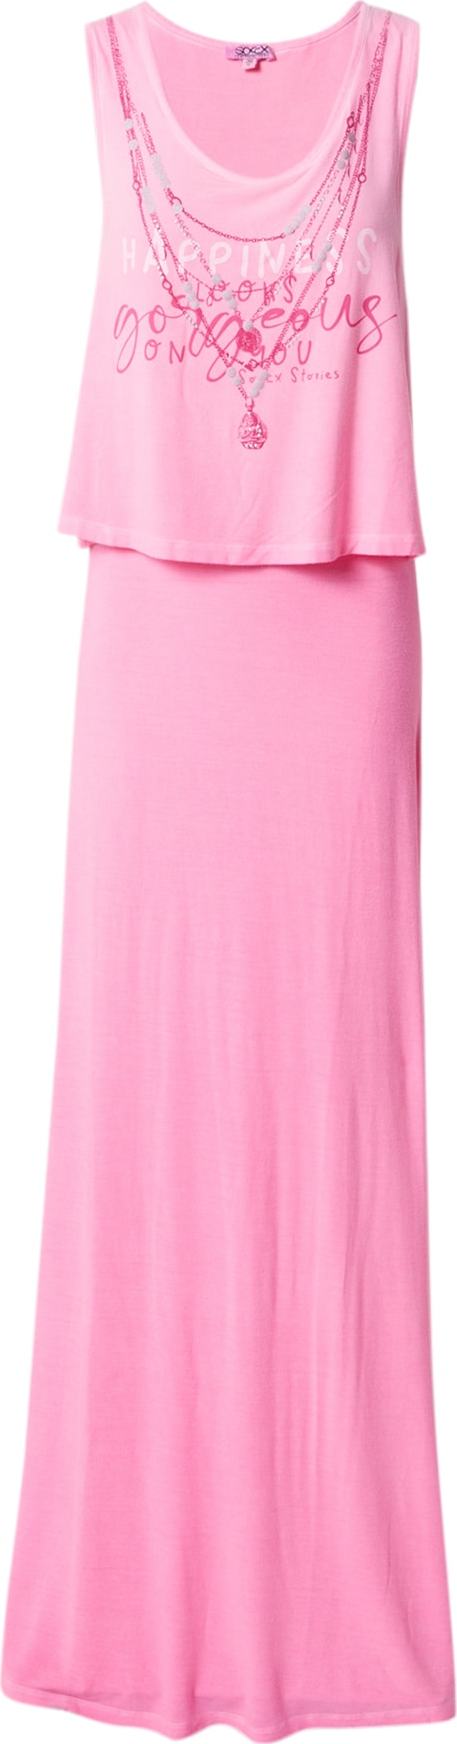 Letní šaty Soccx pink / tmavě růžová / bílá